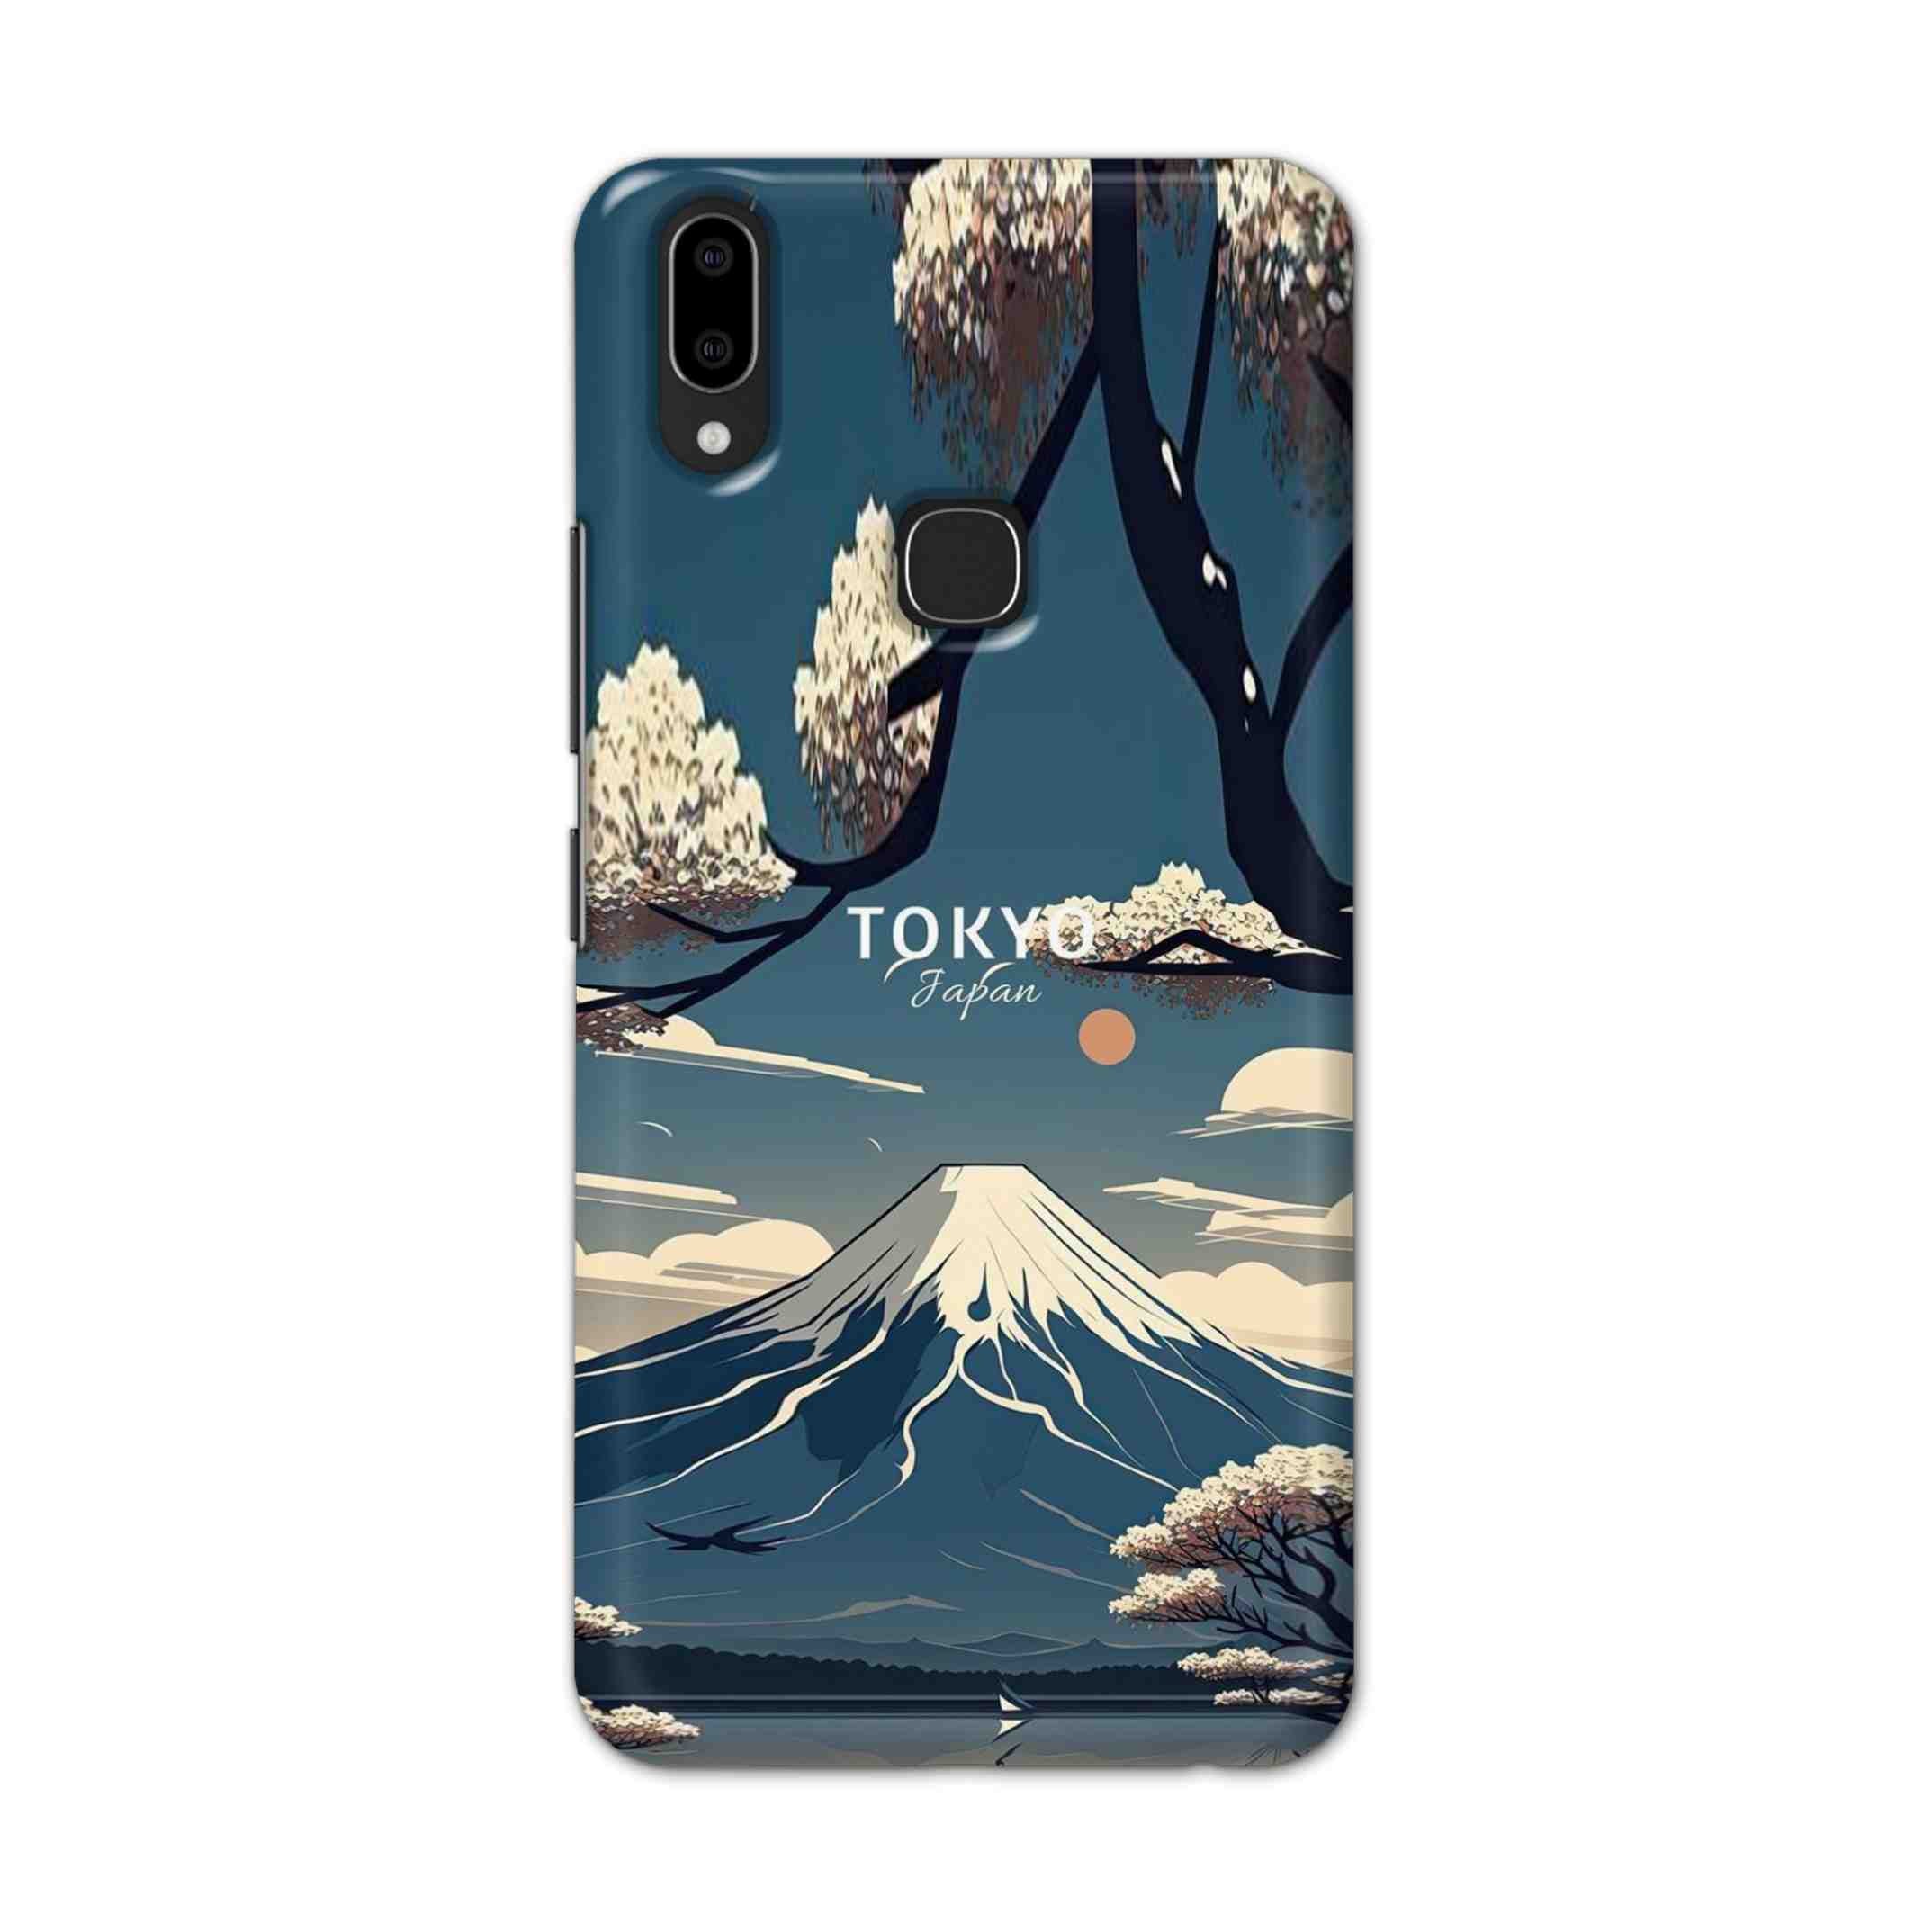 Buy Tokyo Hard Back Mobile Phone Case Cover For Vivo V9 / V9 Youth Online